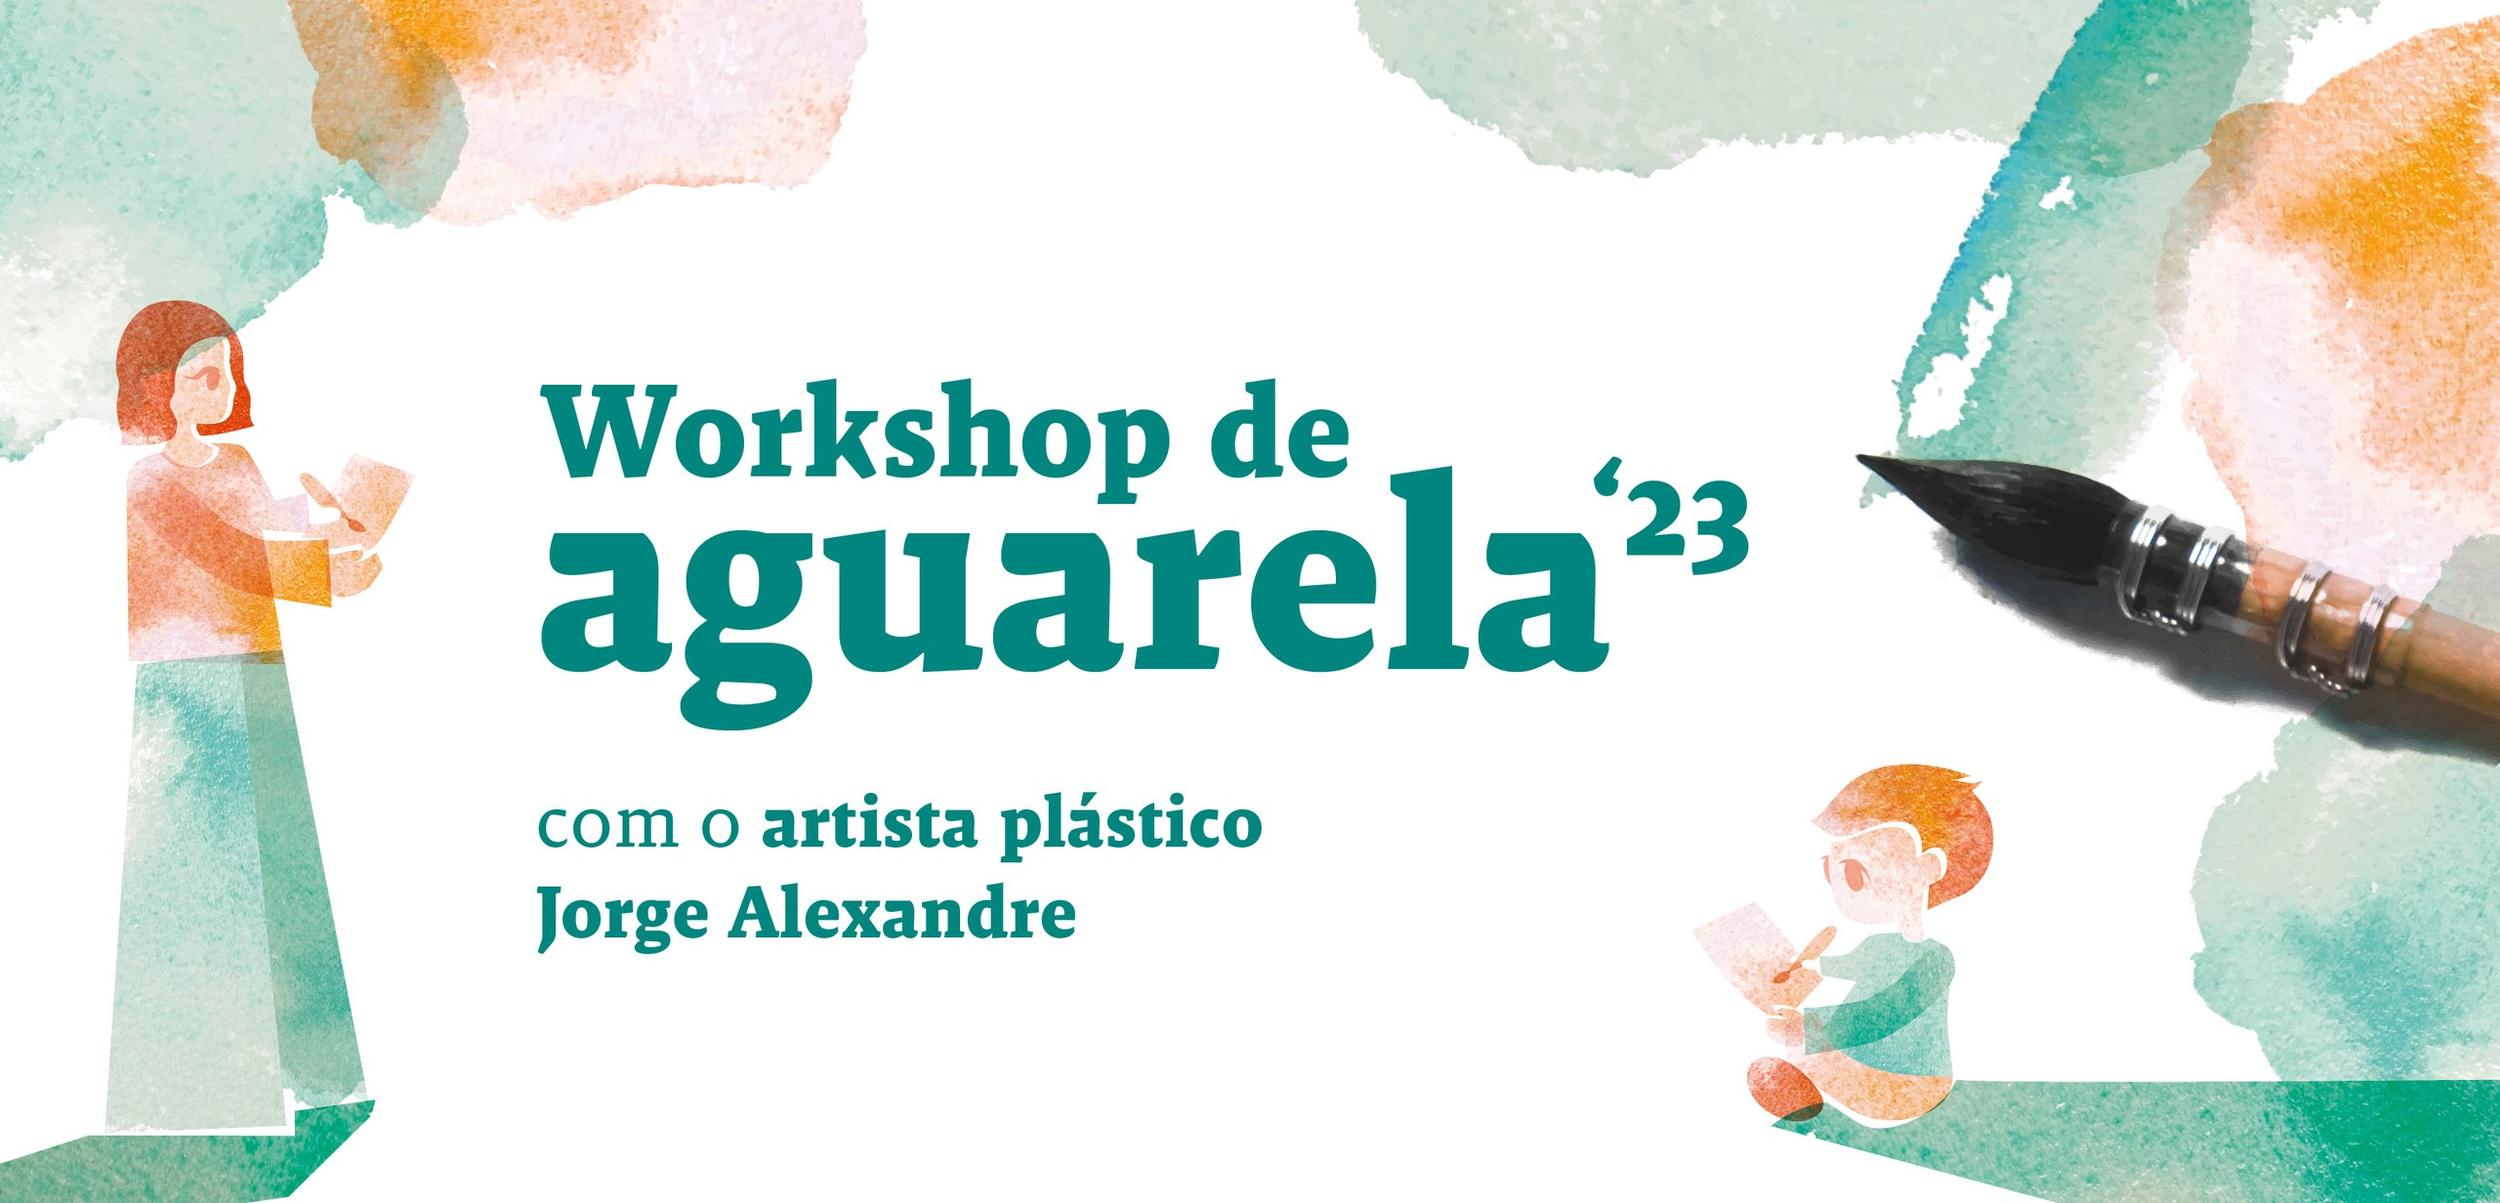 Workshop de Aguarela’ 23 pela mão de um artista plástico do Concelho